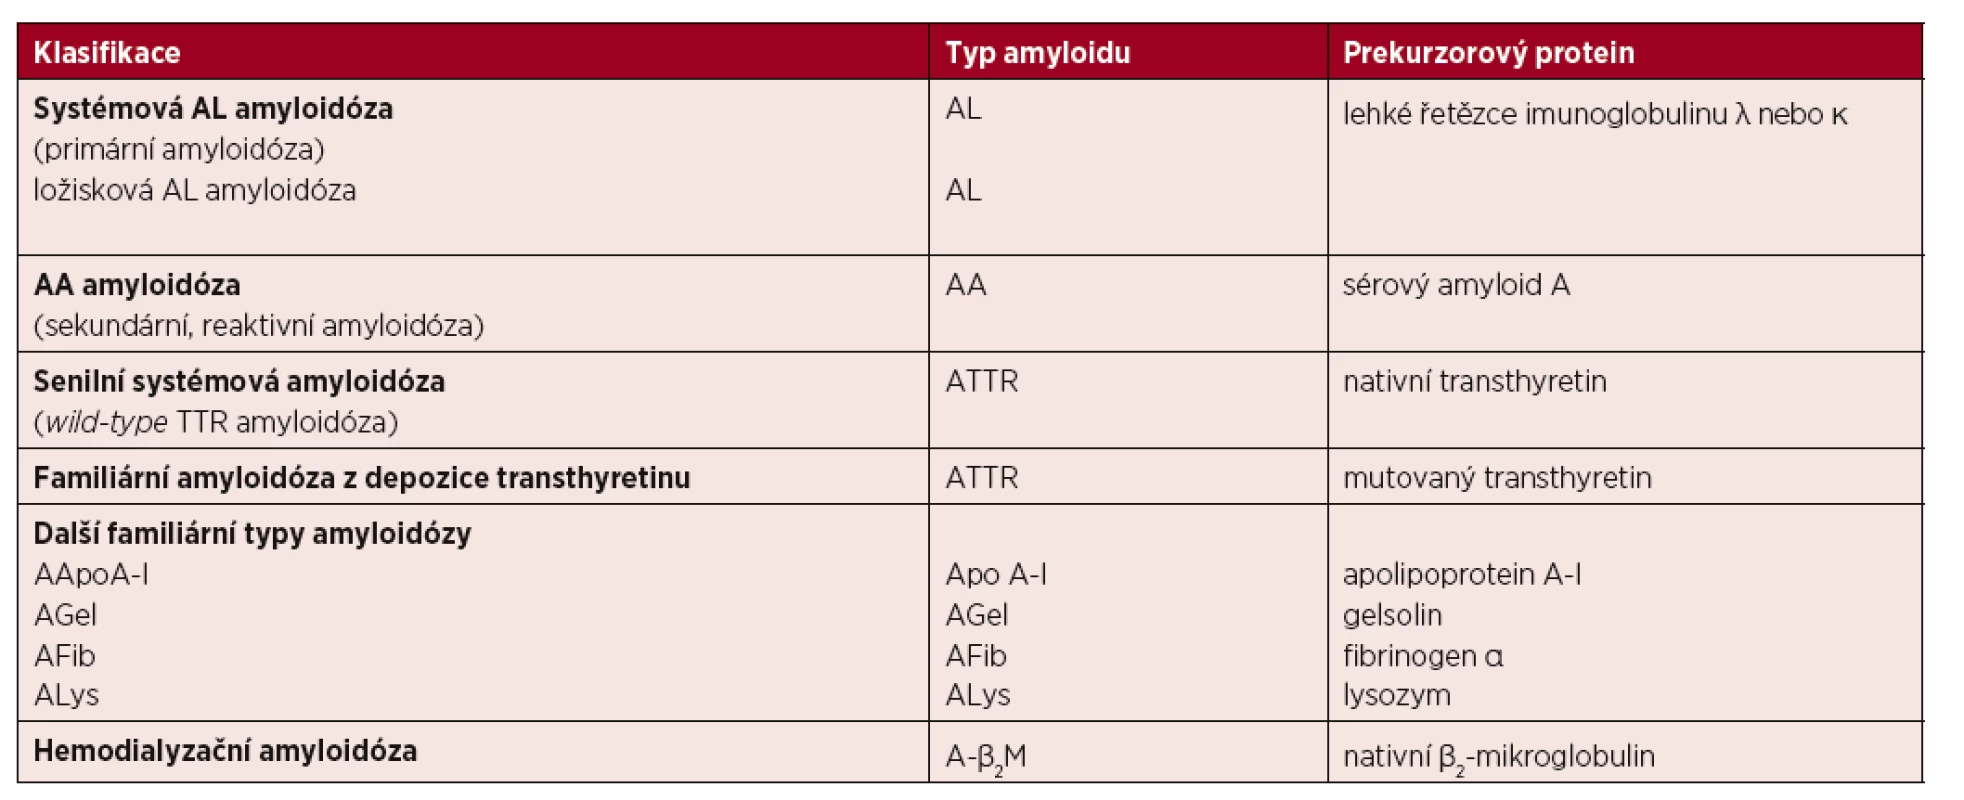 Zjednodušená klasifikace nejčastějších typů amyloidóz [Kyle, 1995a; Sipe, 2016]